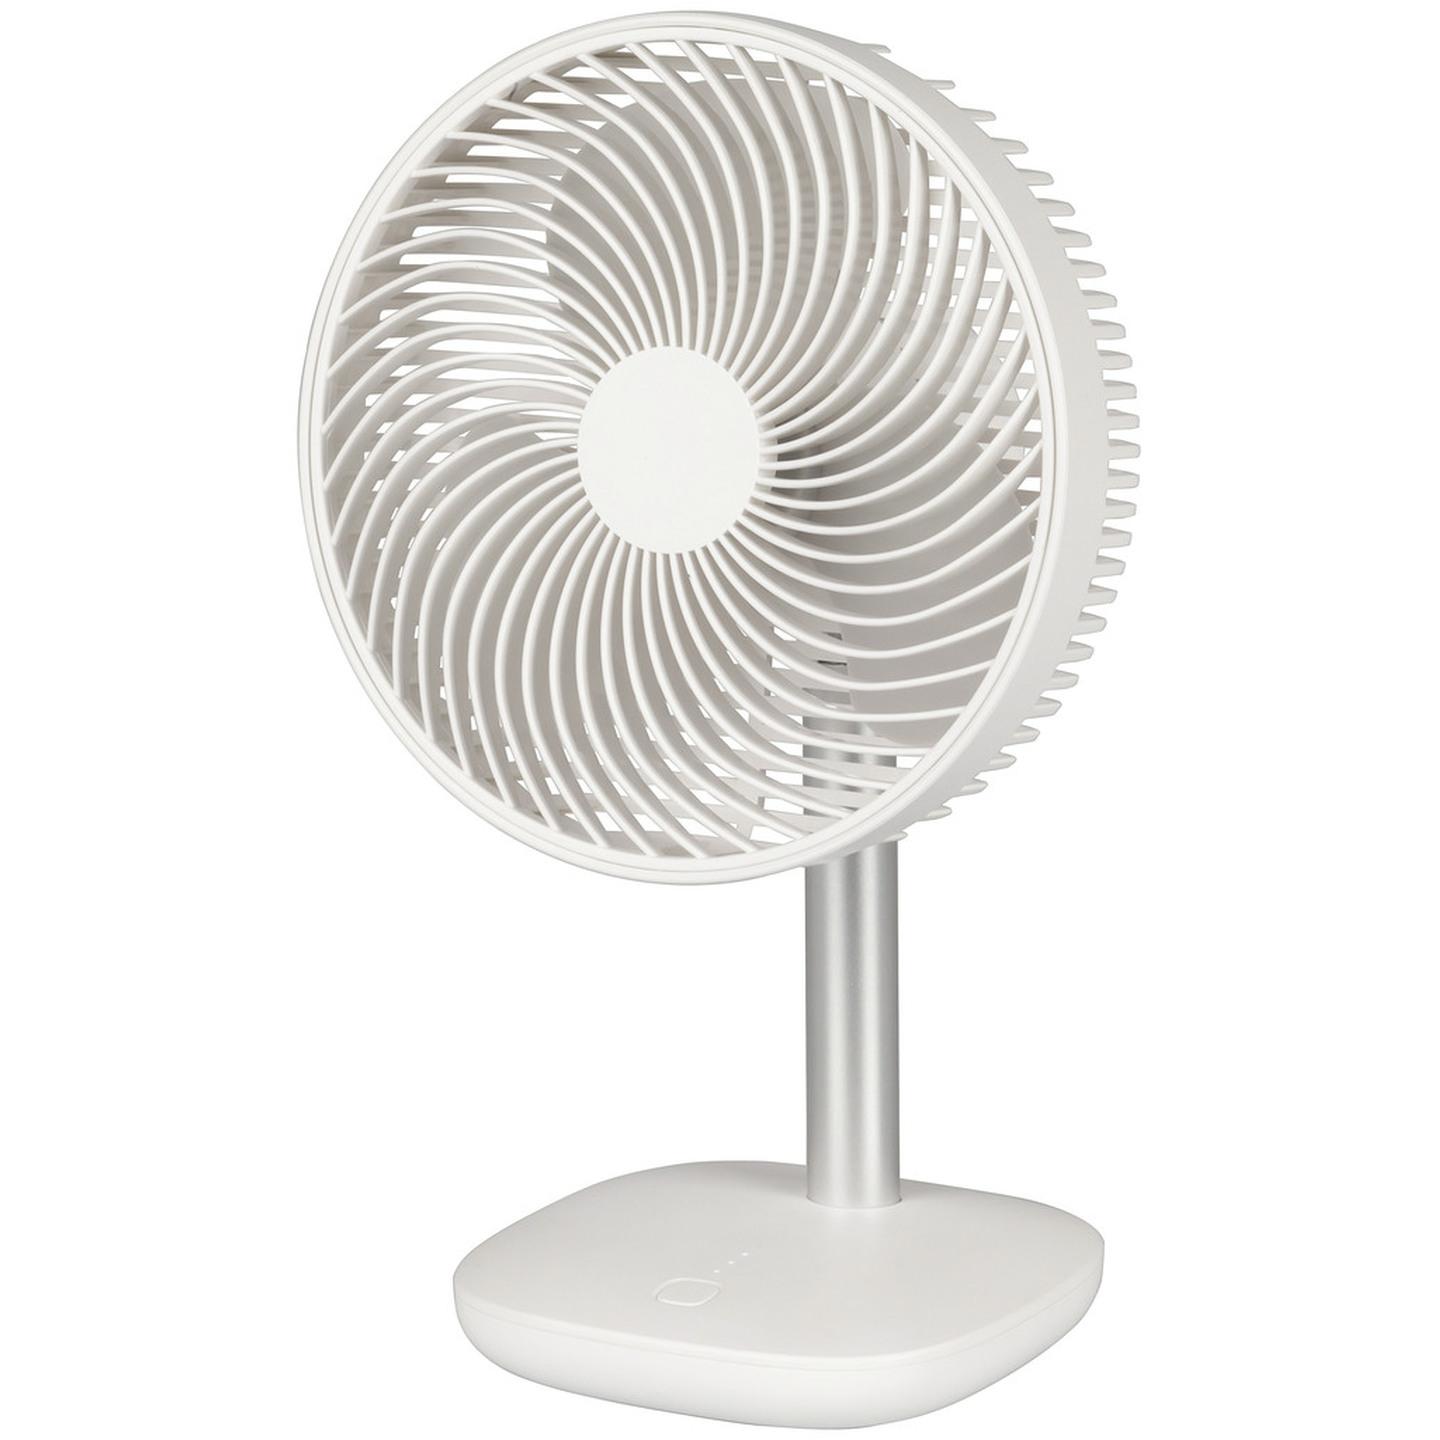 6 Inch Rechargeable Desktop Fan